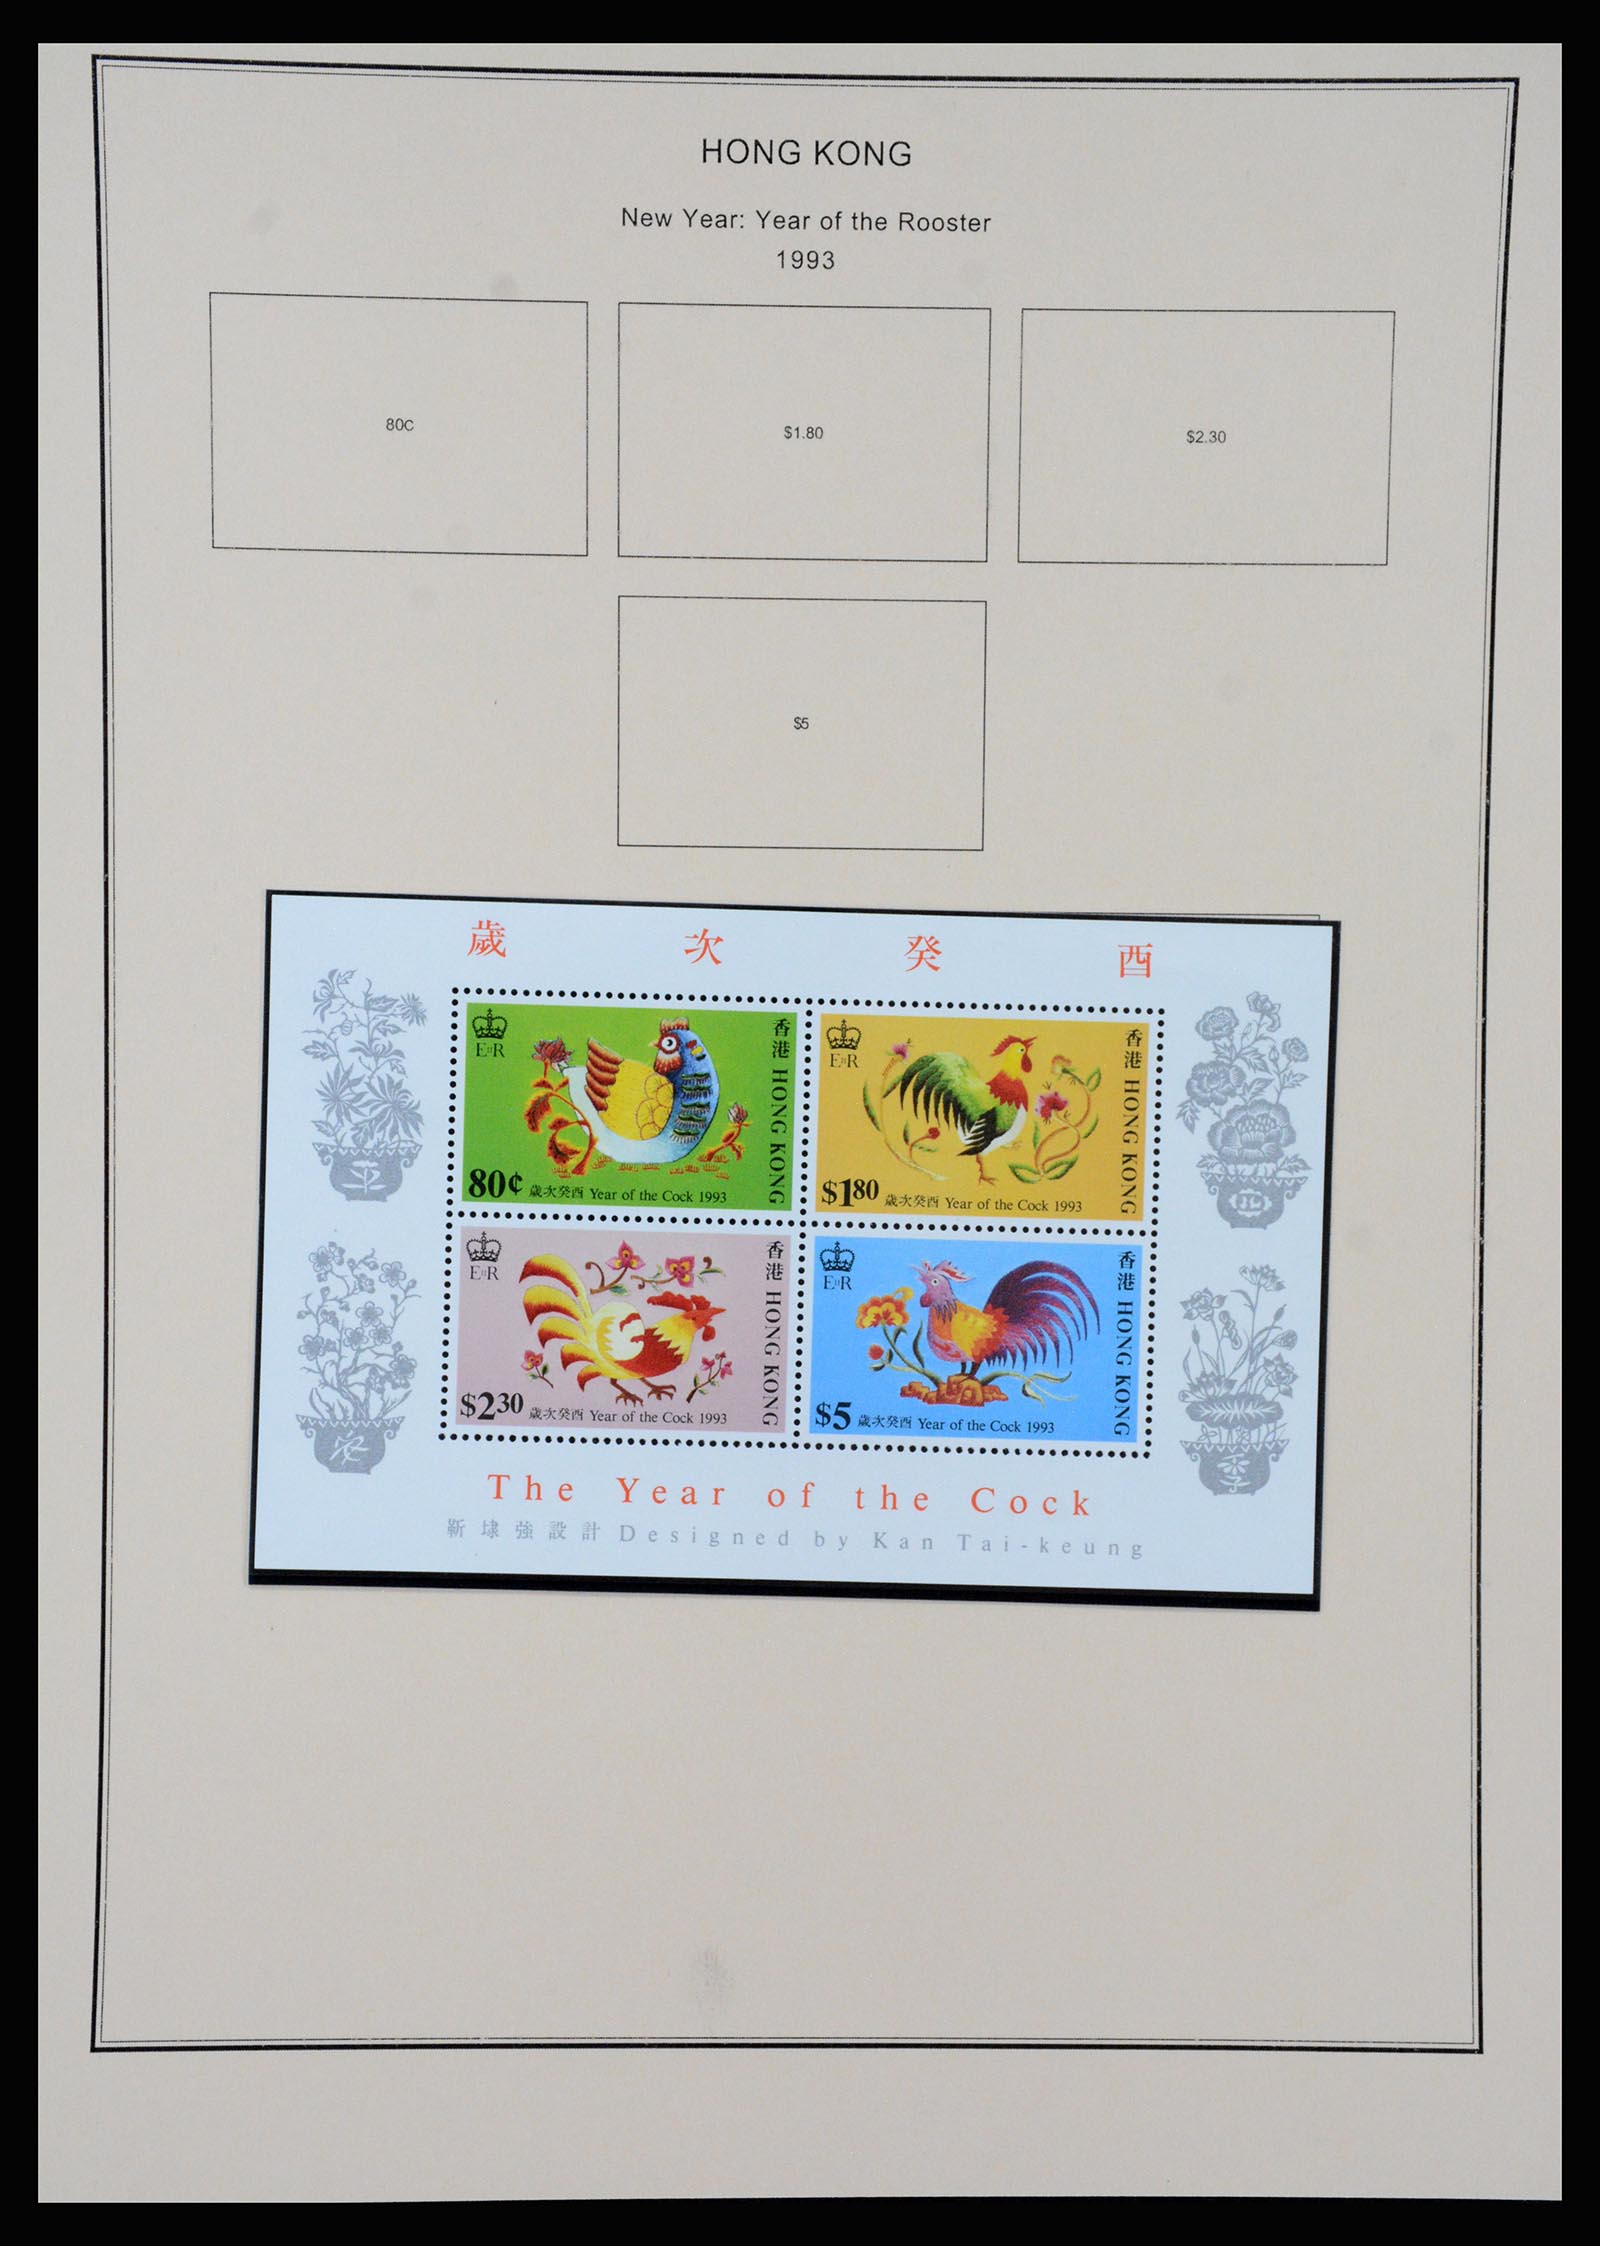 37210 081 - Stamp collection 37210 Hong Kong 1862-2000.